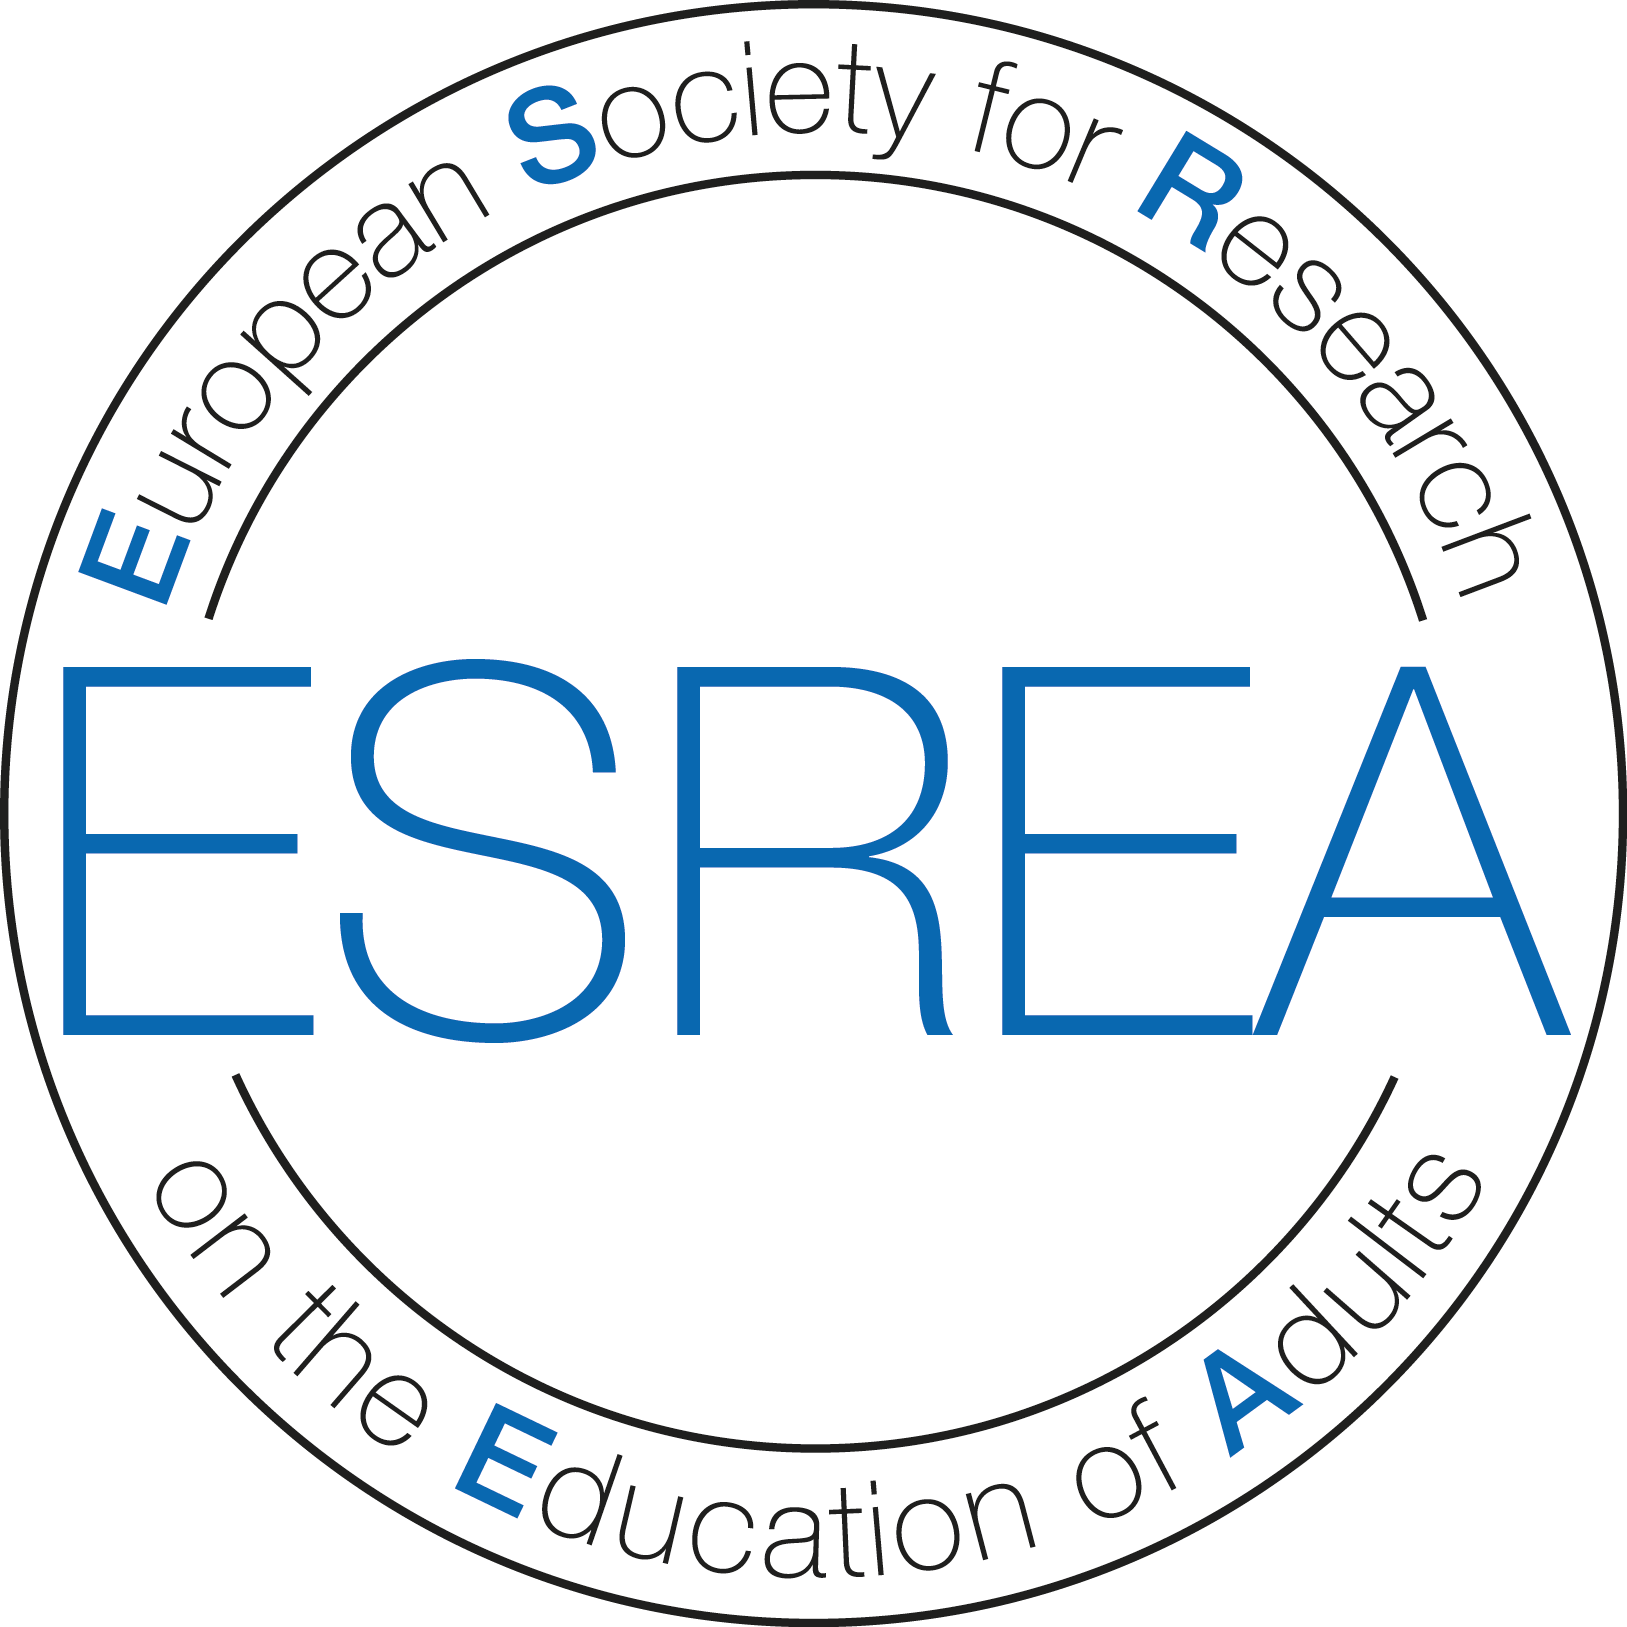 ESREA logo